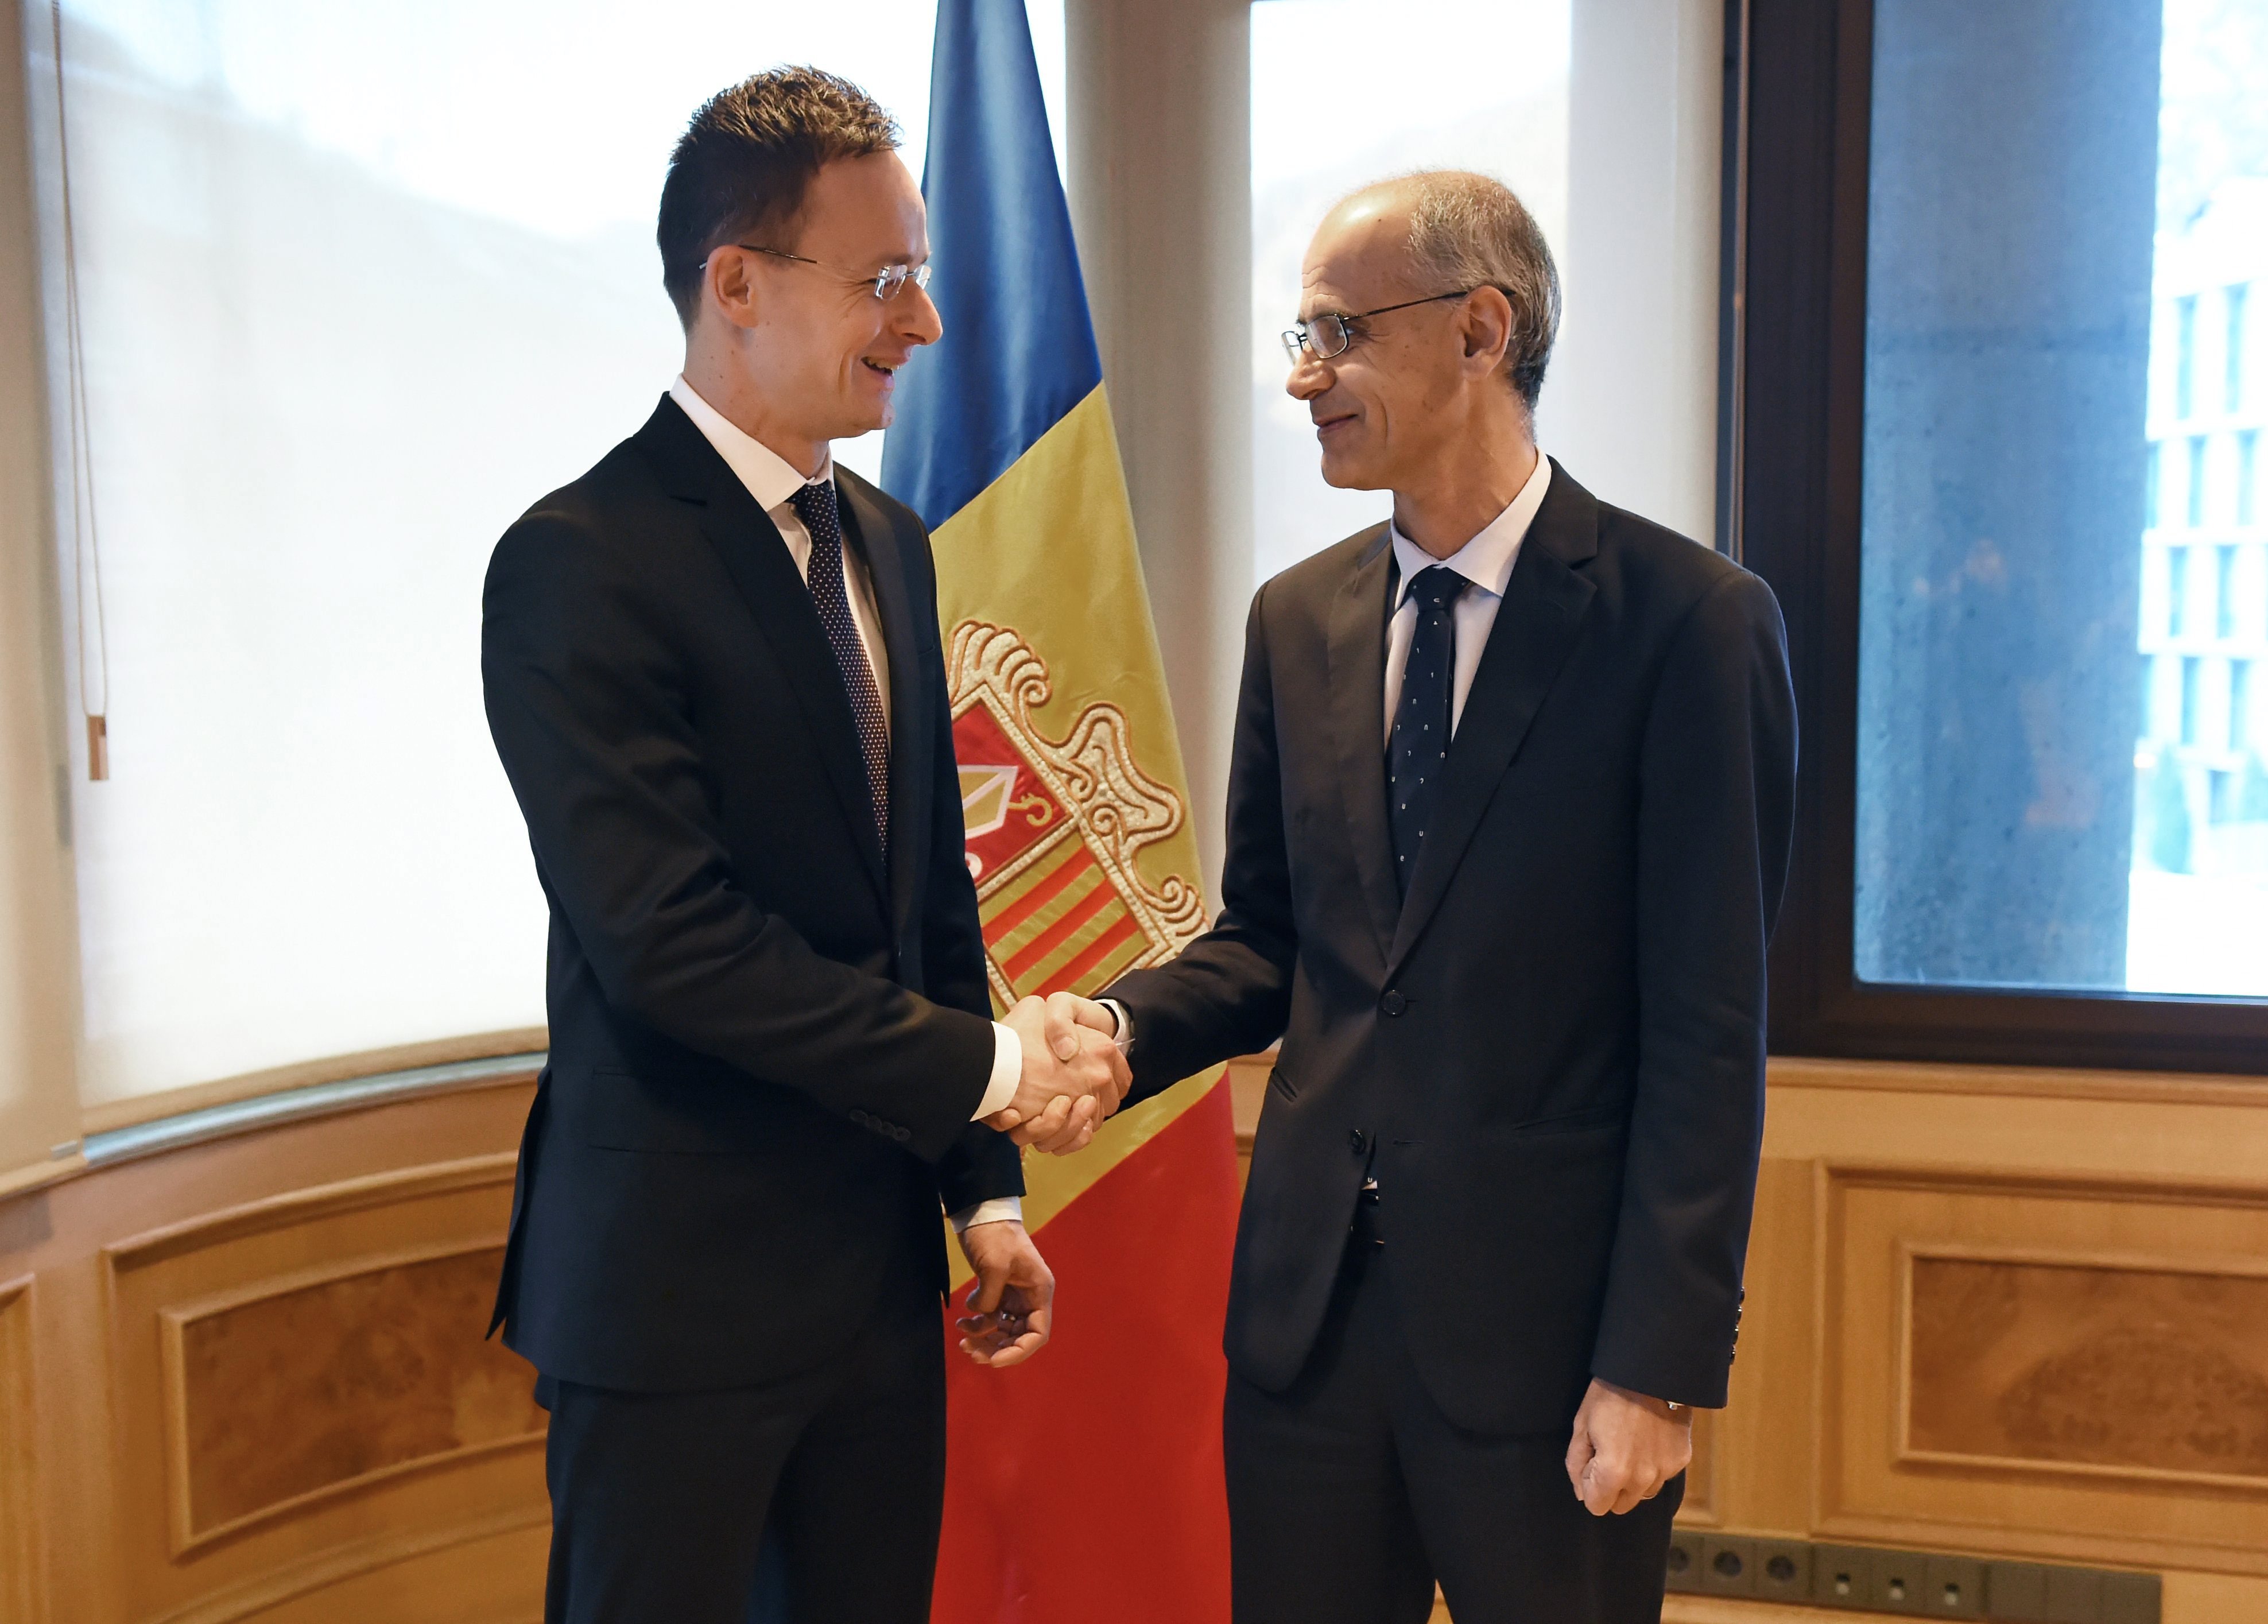 Magyarország határozottan támogatja az EU és Andorra közötti társulási megállapodás mielőbbi létrejöttét